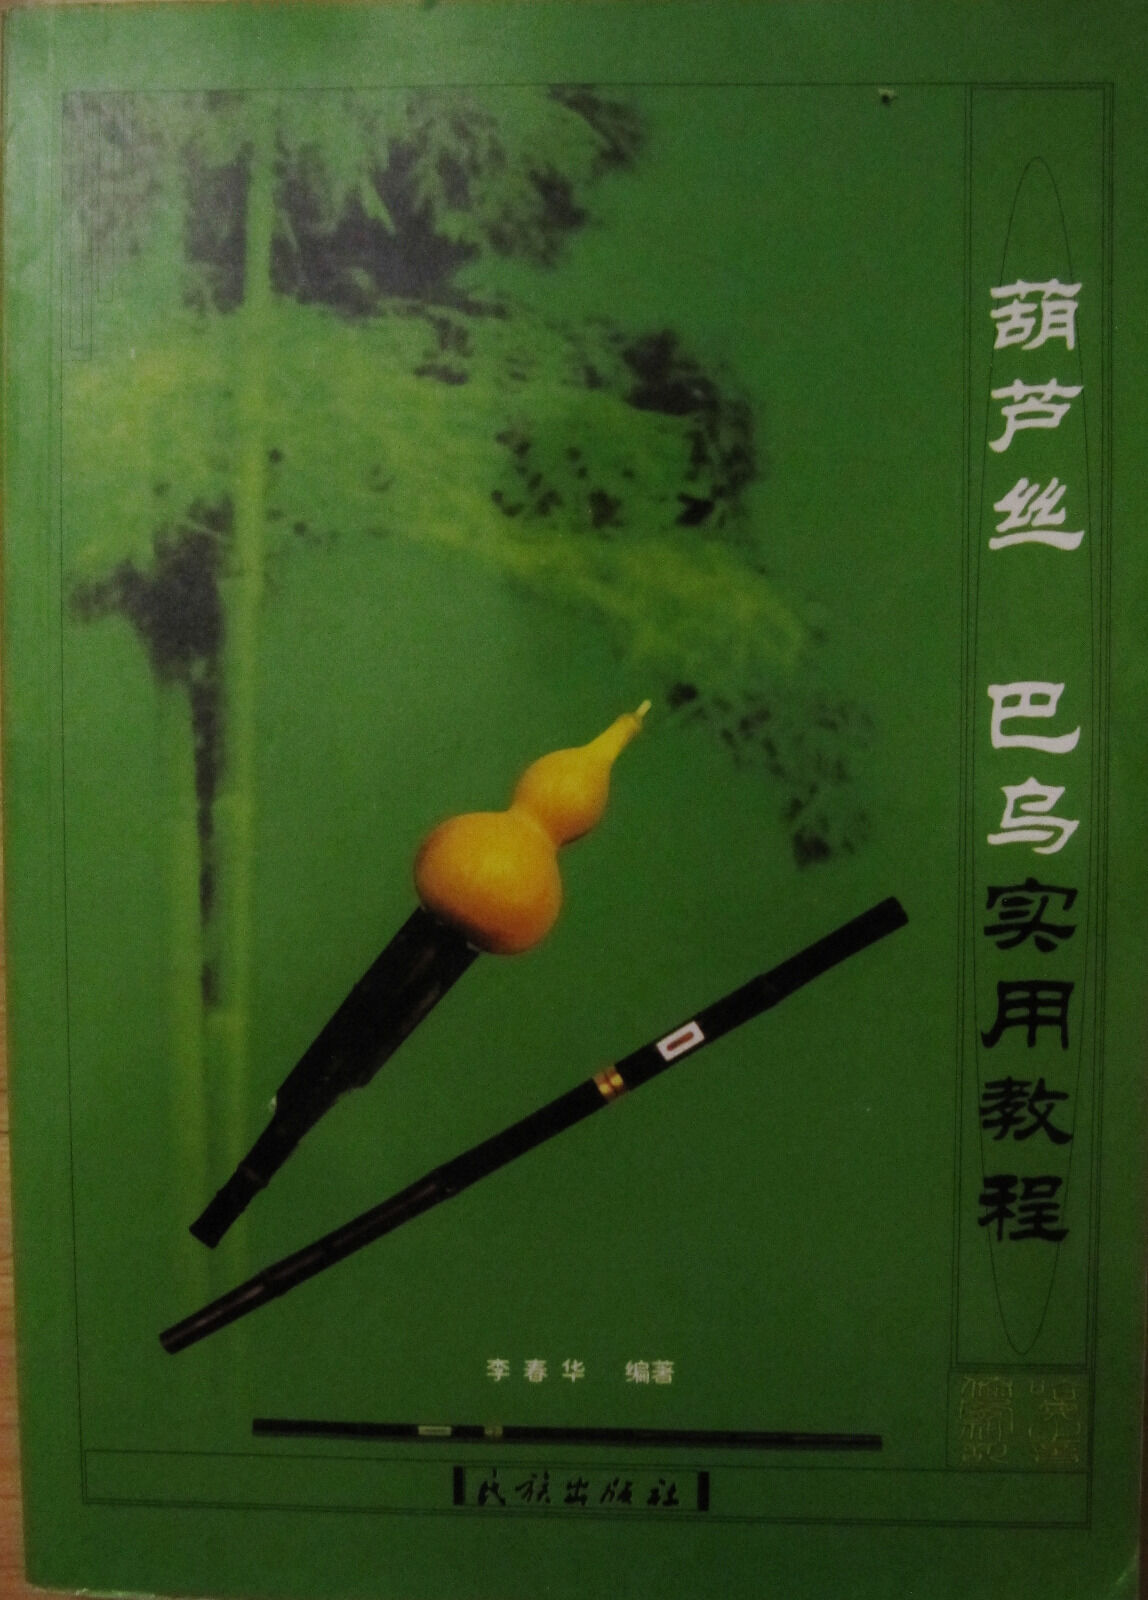 Hulusi and Bawu Tutorial/self learning book 葫芦丝 巴乌 实用教程